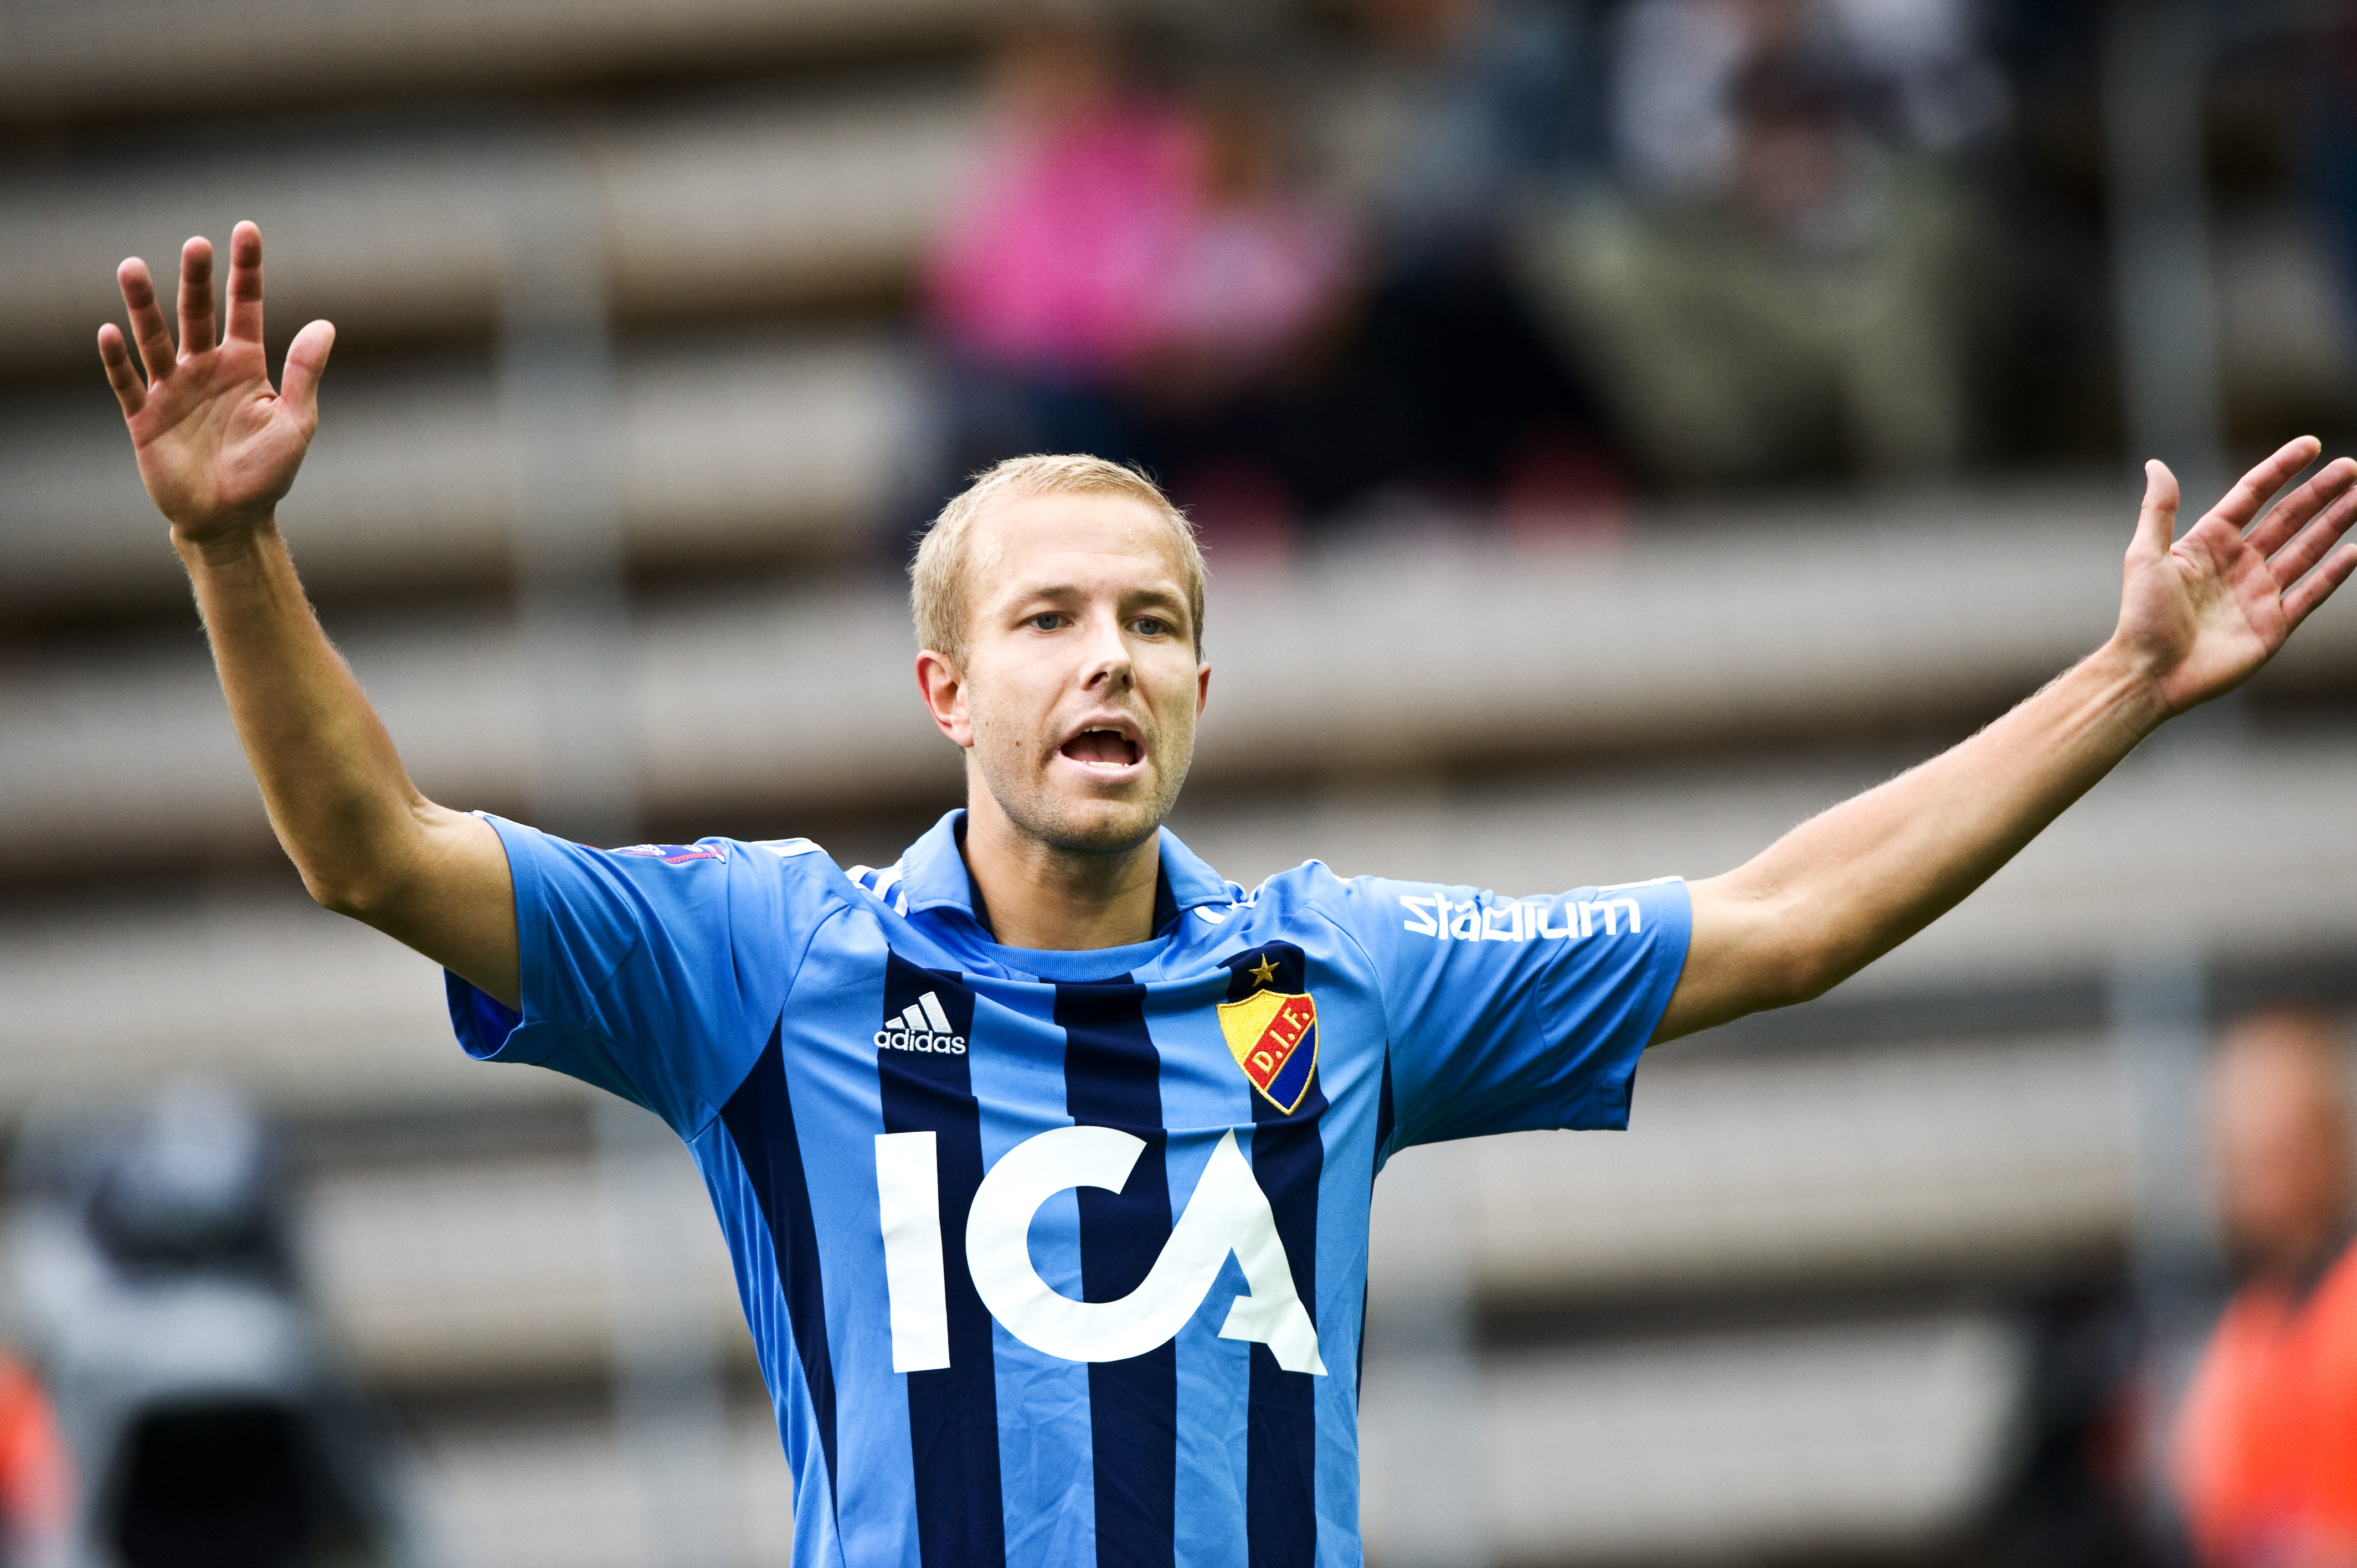 5. Petter Gustafsson, vänsterback. Betyg: 3/5. Ytterback som utvecklats mycket sedan han kom till Djurgården 2009. En hårt arbetande spelare som kan spela på båda kanterna. 